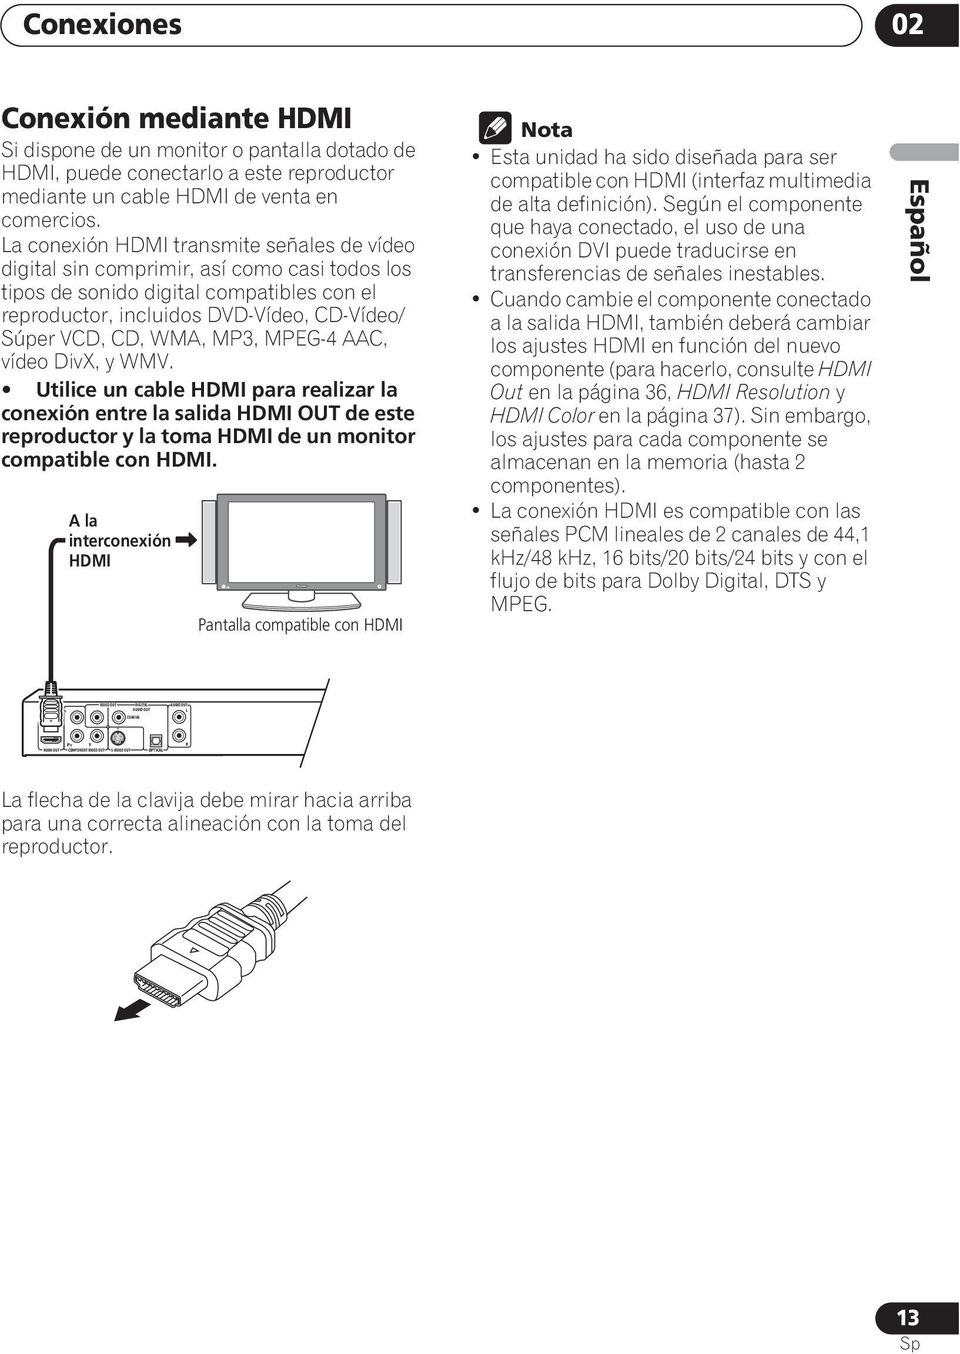 MP3, MPEG-4 AAC, vídeo DivX, y WMV. Utilice un cable HDMI para realizar la conexión entre la salida HDMI OUT de este reproductor y la toma HDMI de un monitor compatible con HDMI.